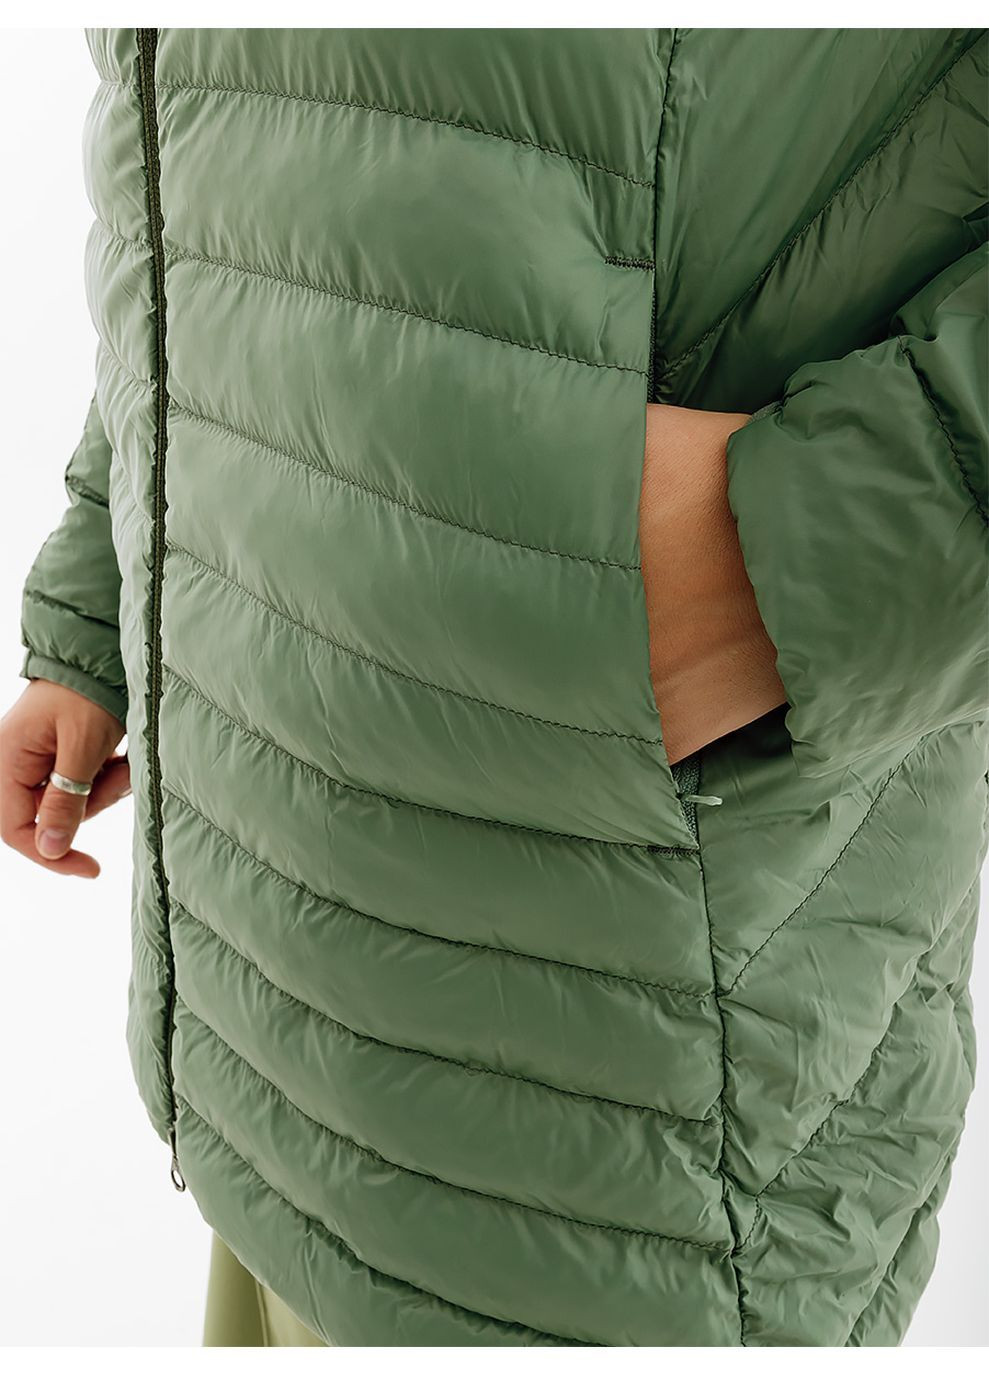 Зеленая демисезонная женская куртка packlite jacket зеленый Puma